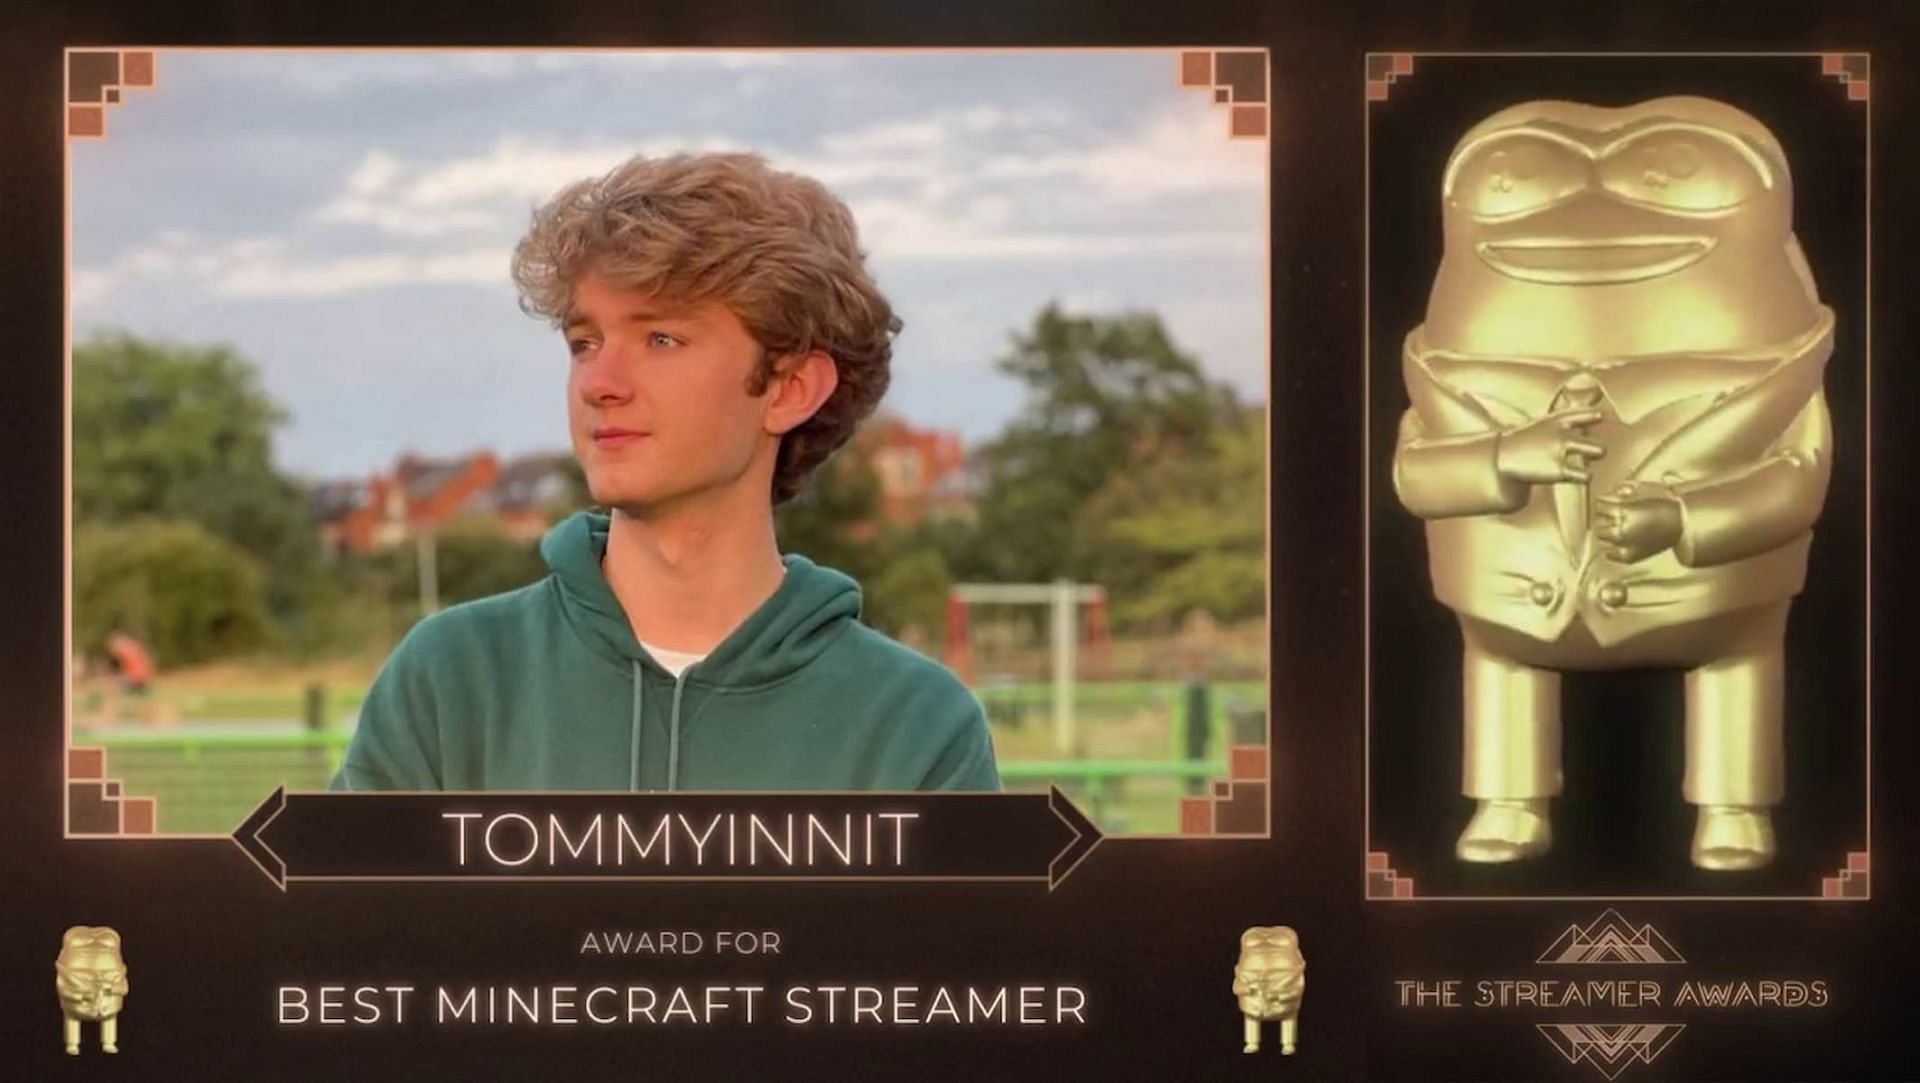 TommyInnIt wins 'Best Minecraft Streamer' at Streamer Awards 2022